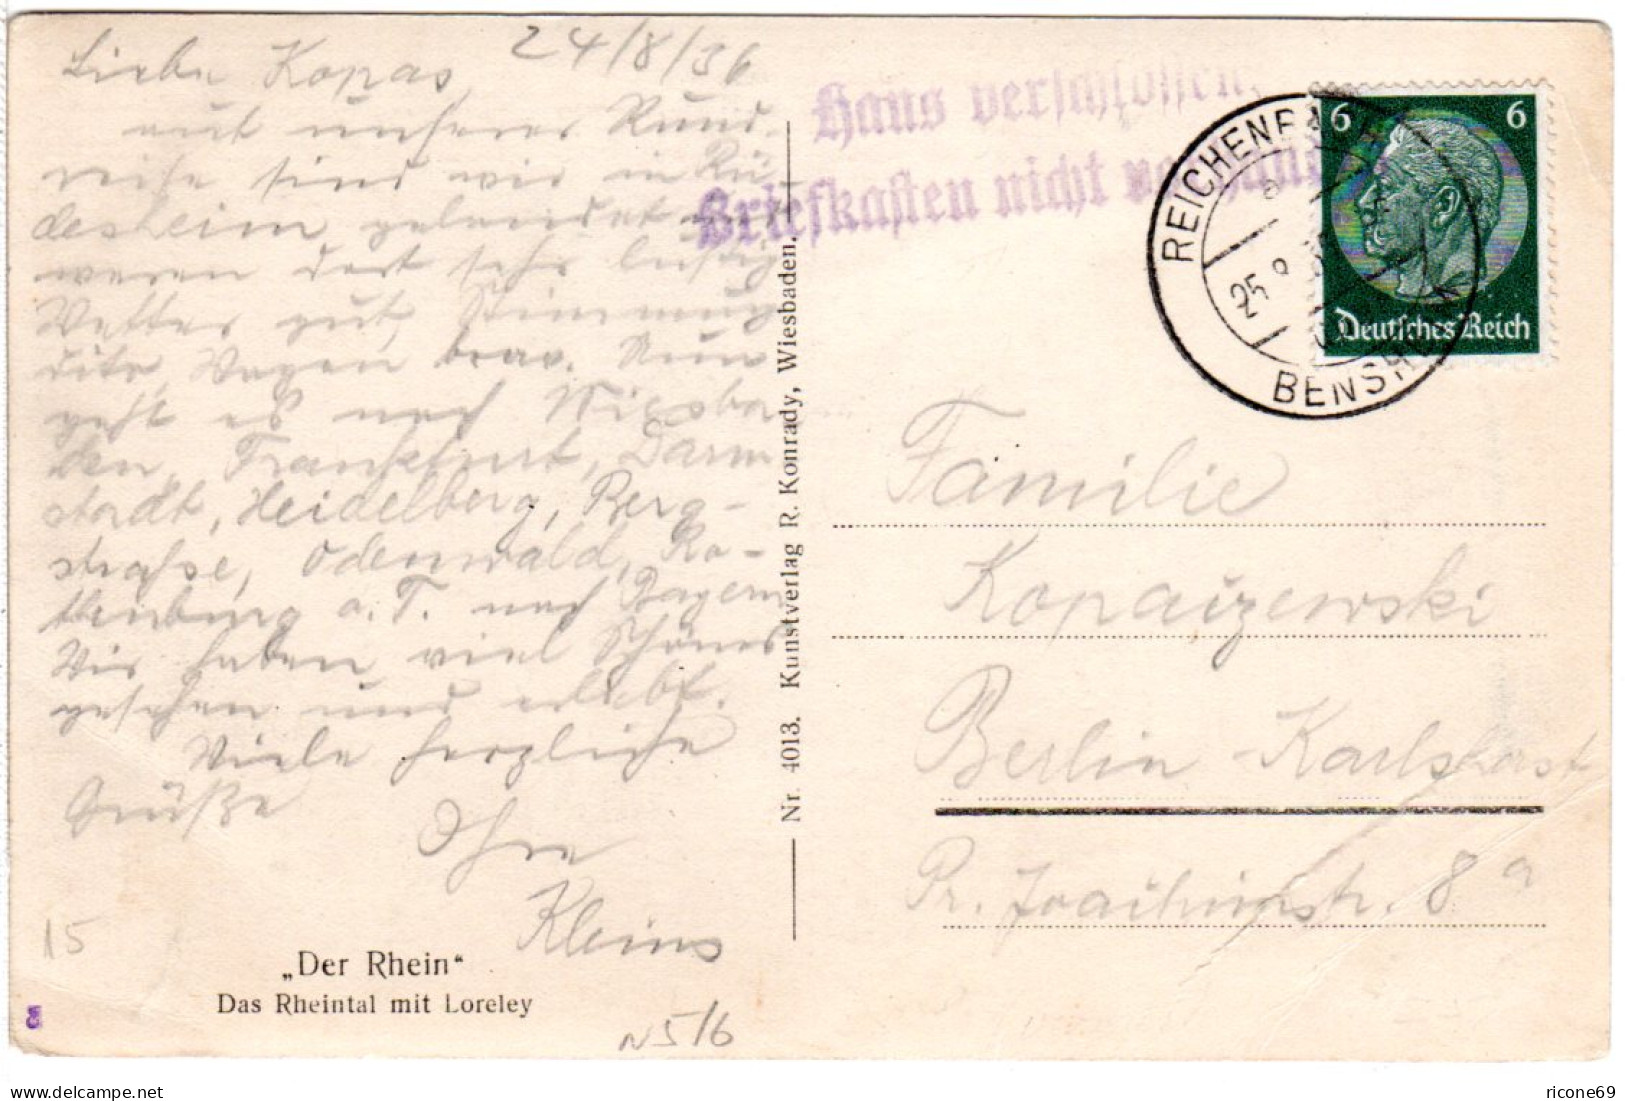 DR 1936, Berlin Hinweisstpl. Haus Verschlossen... Auf Karte V. Reichenbach - Lettres & Documents